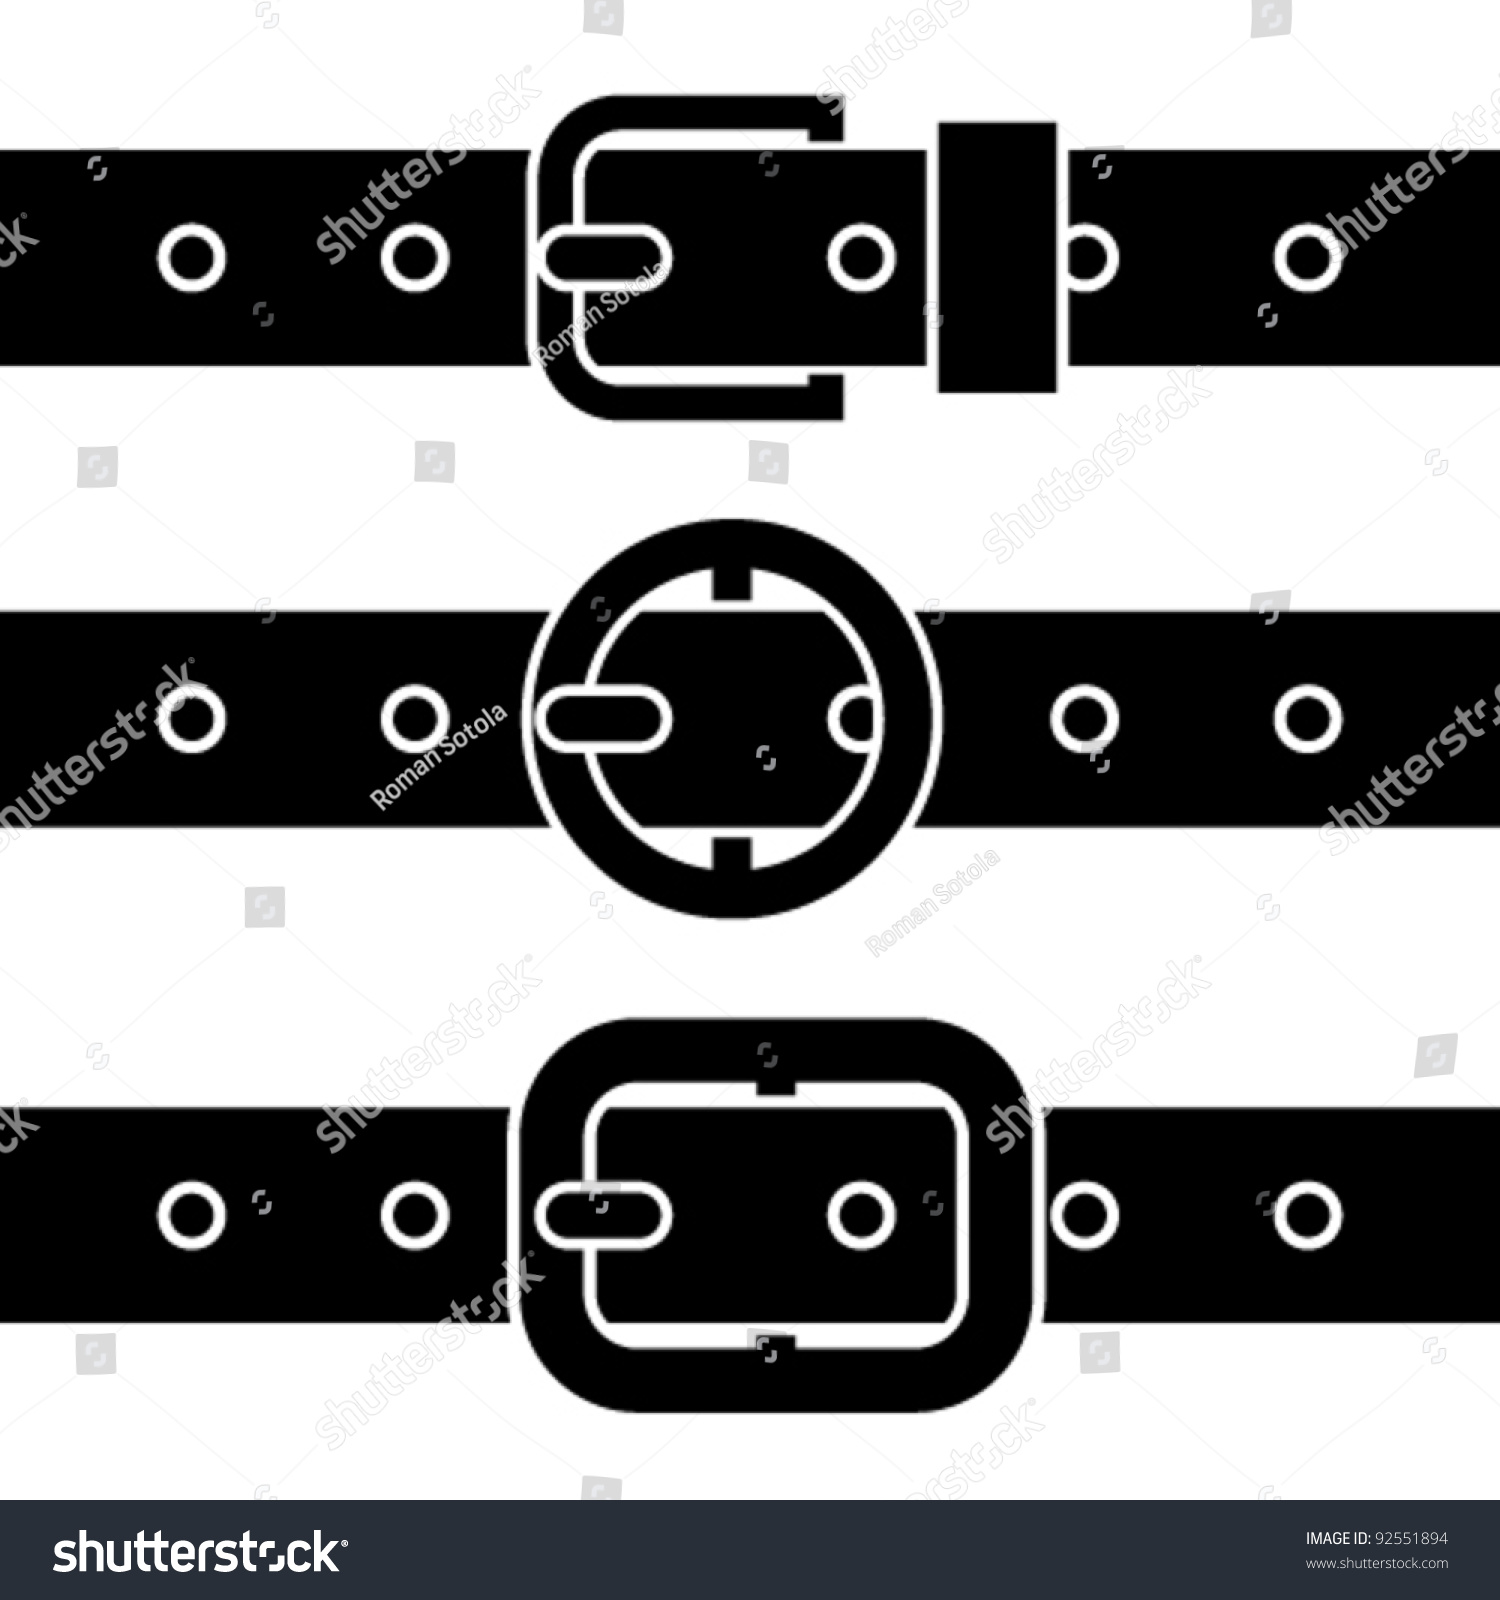 Vector Buckle Belt Black Symbols - 92551894 : Shutterstock